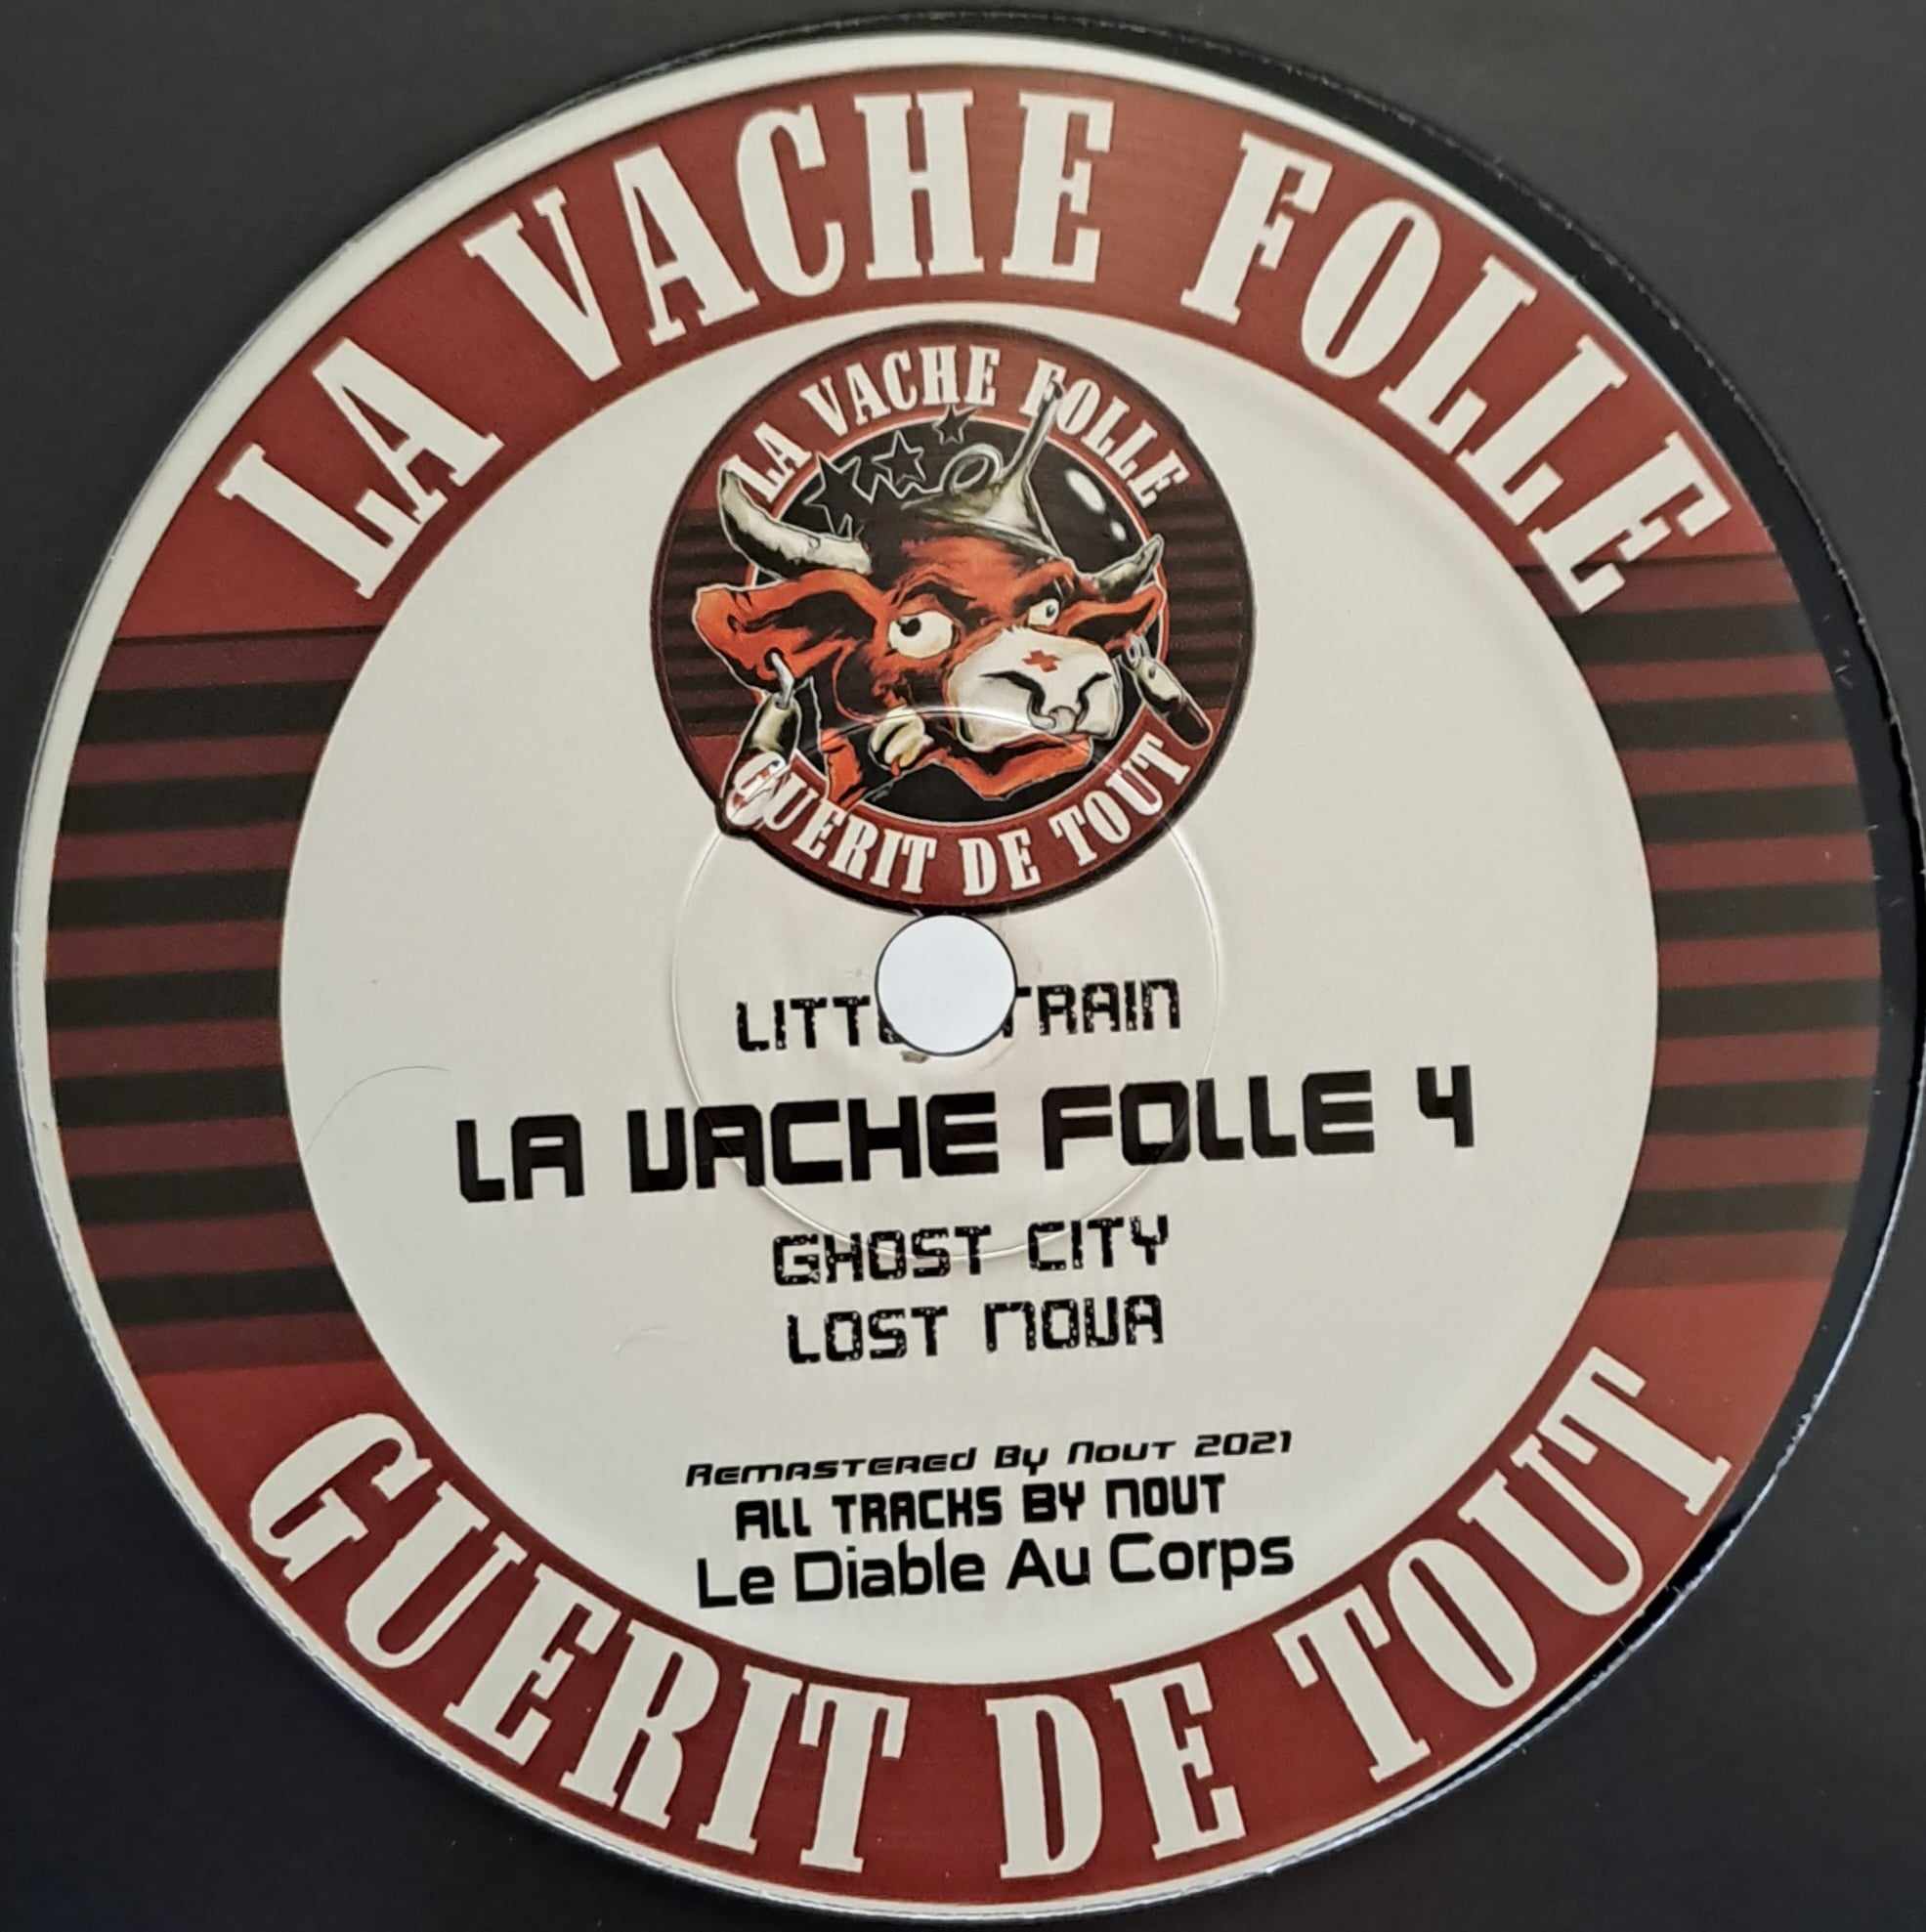 La Vache Folle 04 (RP2023) - vinyle freetekno